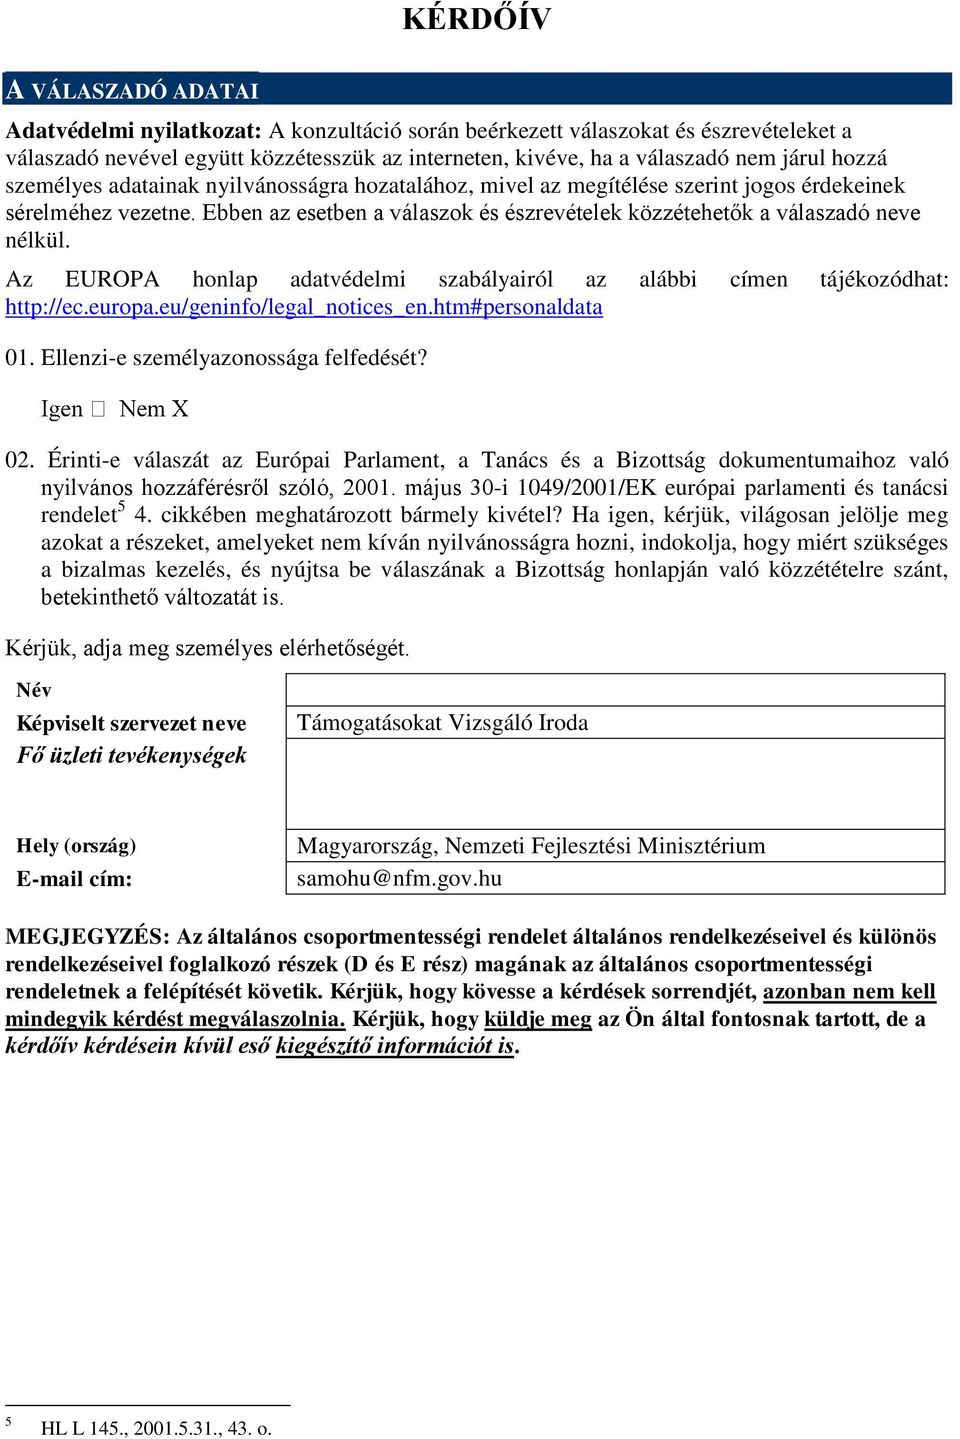 Az EUROPA honlap adatvédelmi szabályairól az alábbi címen tájékozódhat: http://ec.europa.eu/geninfo/legal_notices_en.htm#personaldata 01. Ellenzi-e személyazonossága felfedését? 02.